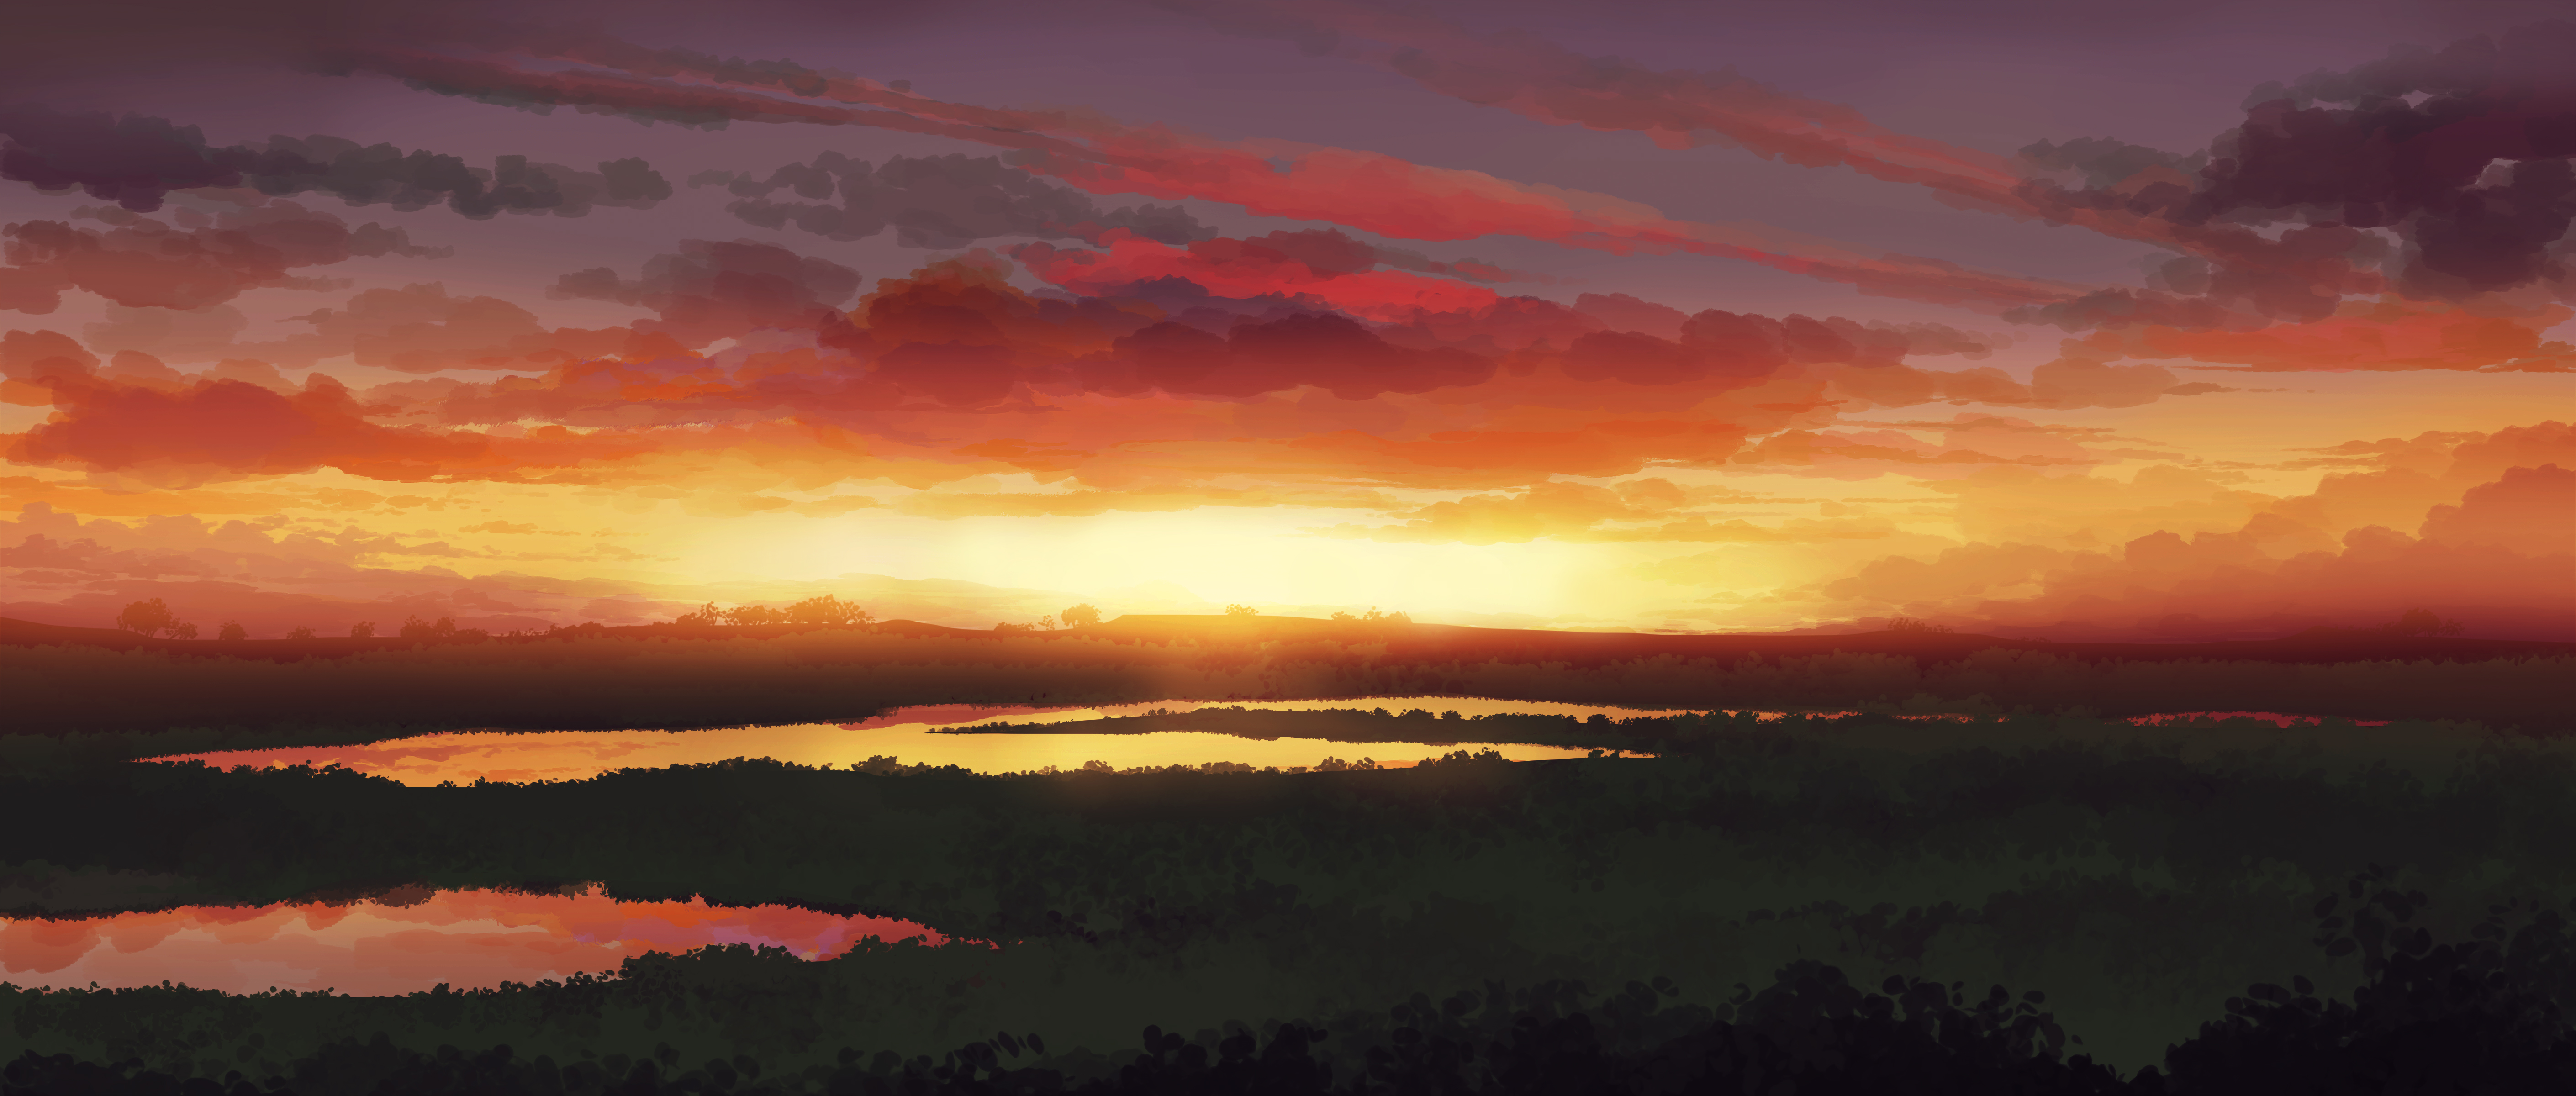 Gracile Landscape Digital Digital Art Artwork Illustration Sunset Nature Sky 5640x2400